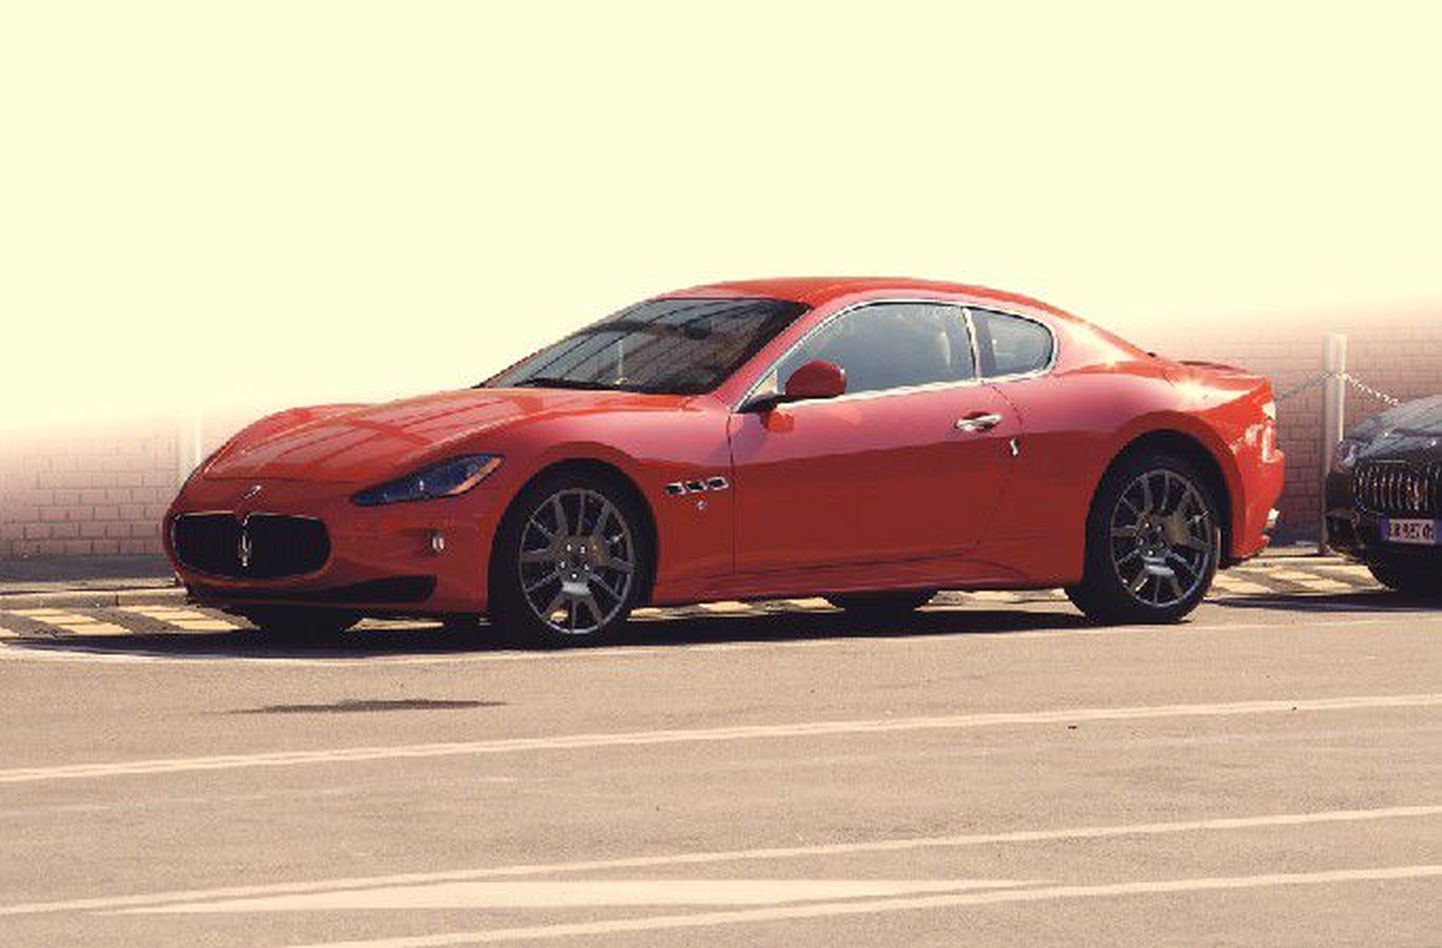 Двигатели на Maserati GranТurismo такие же, как на Ferrari F430, но по своему характеру эти автомобили имеют совершенно разные характеры. Если Ferrari больше напирает на скорость, то Ma­serati склоняется к удобству и комфорту.